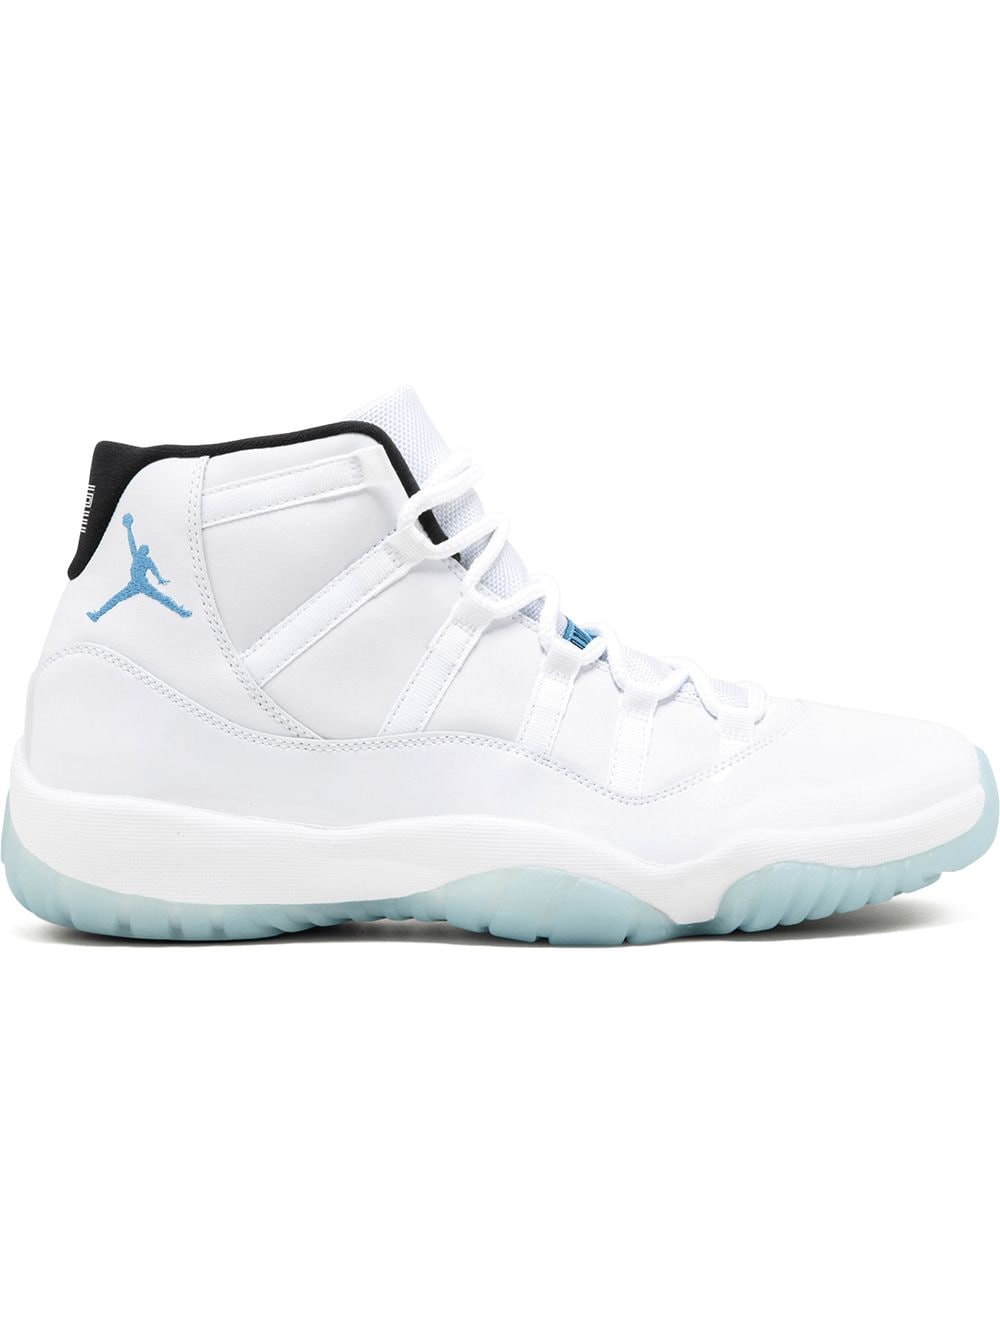 Jordan Air Jordan 11 Retro "Legend Blue" sneakers - White